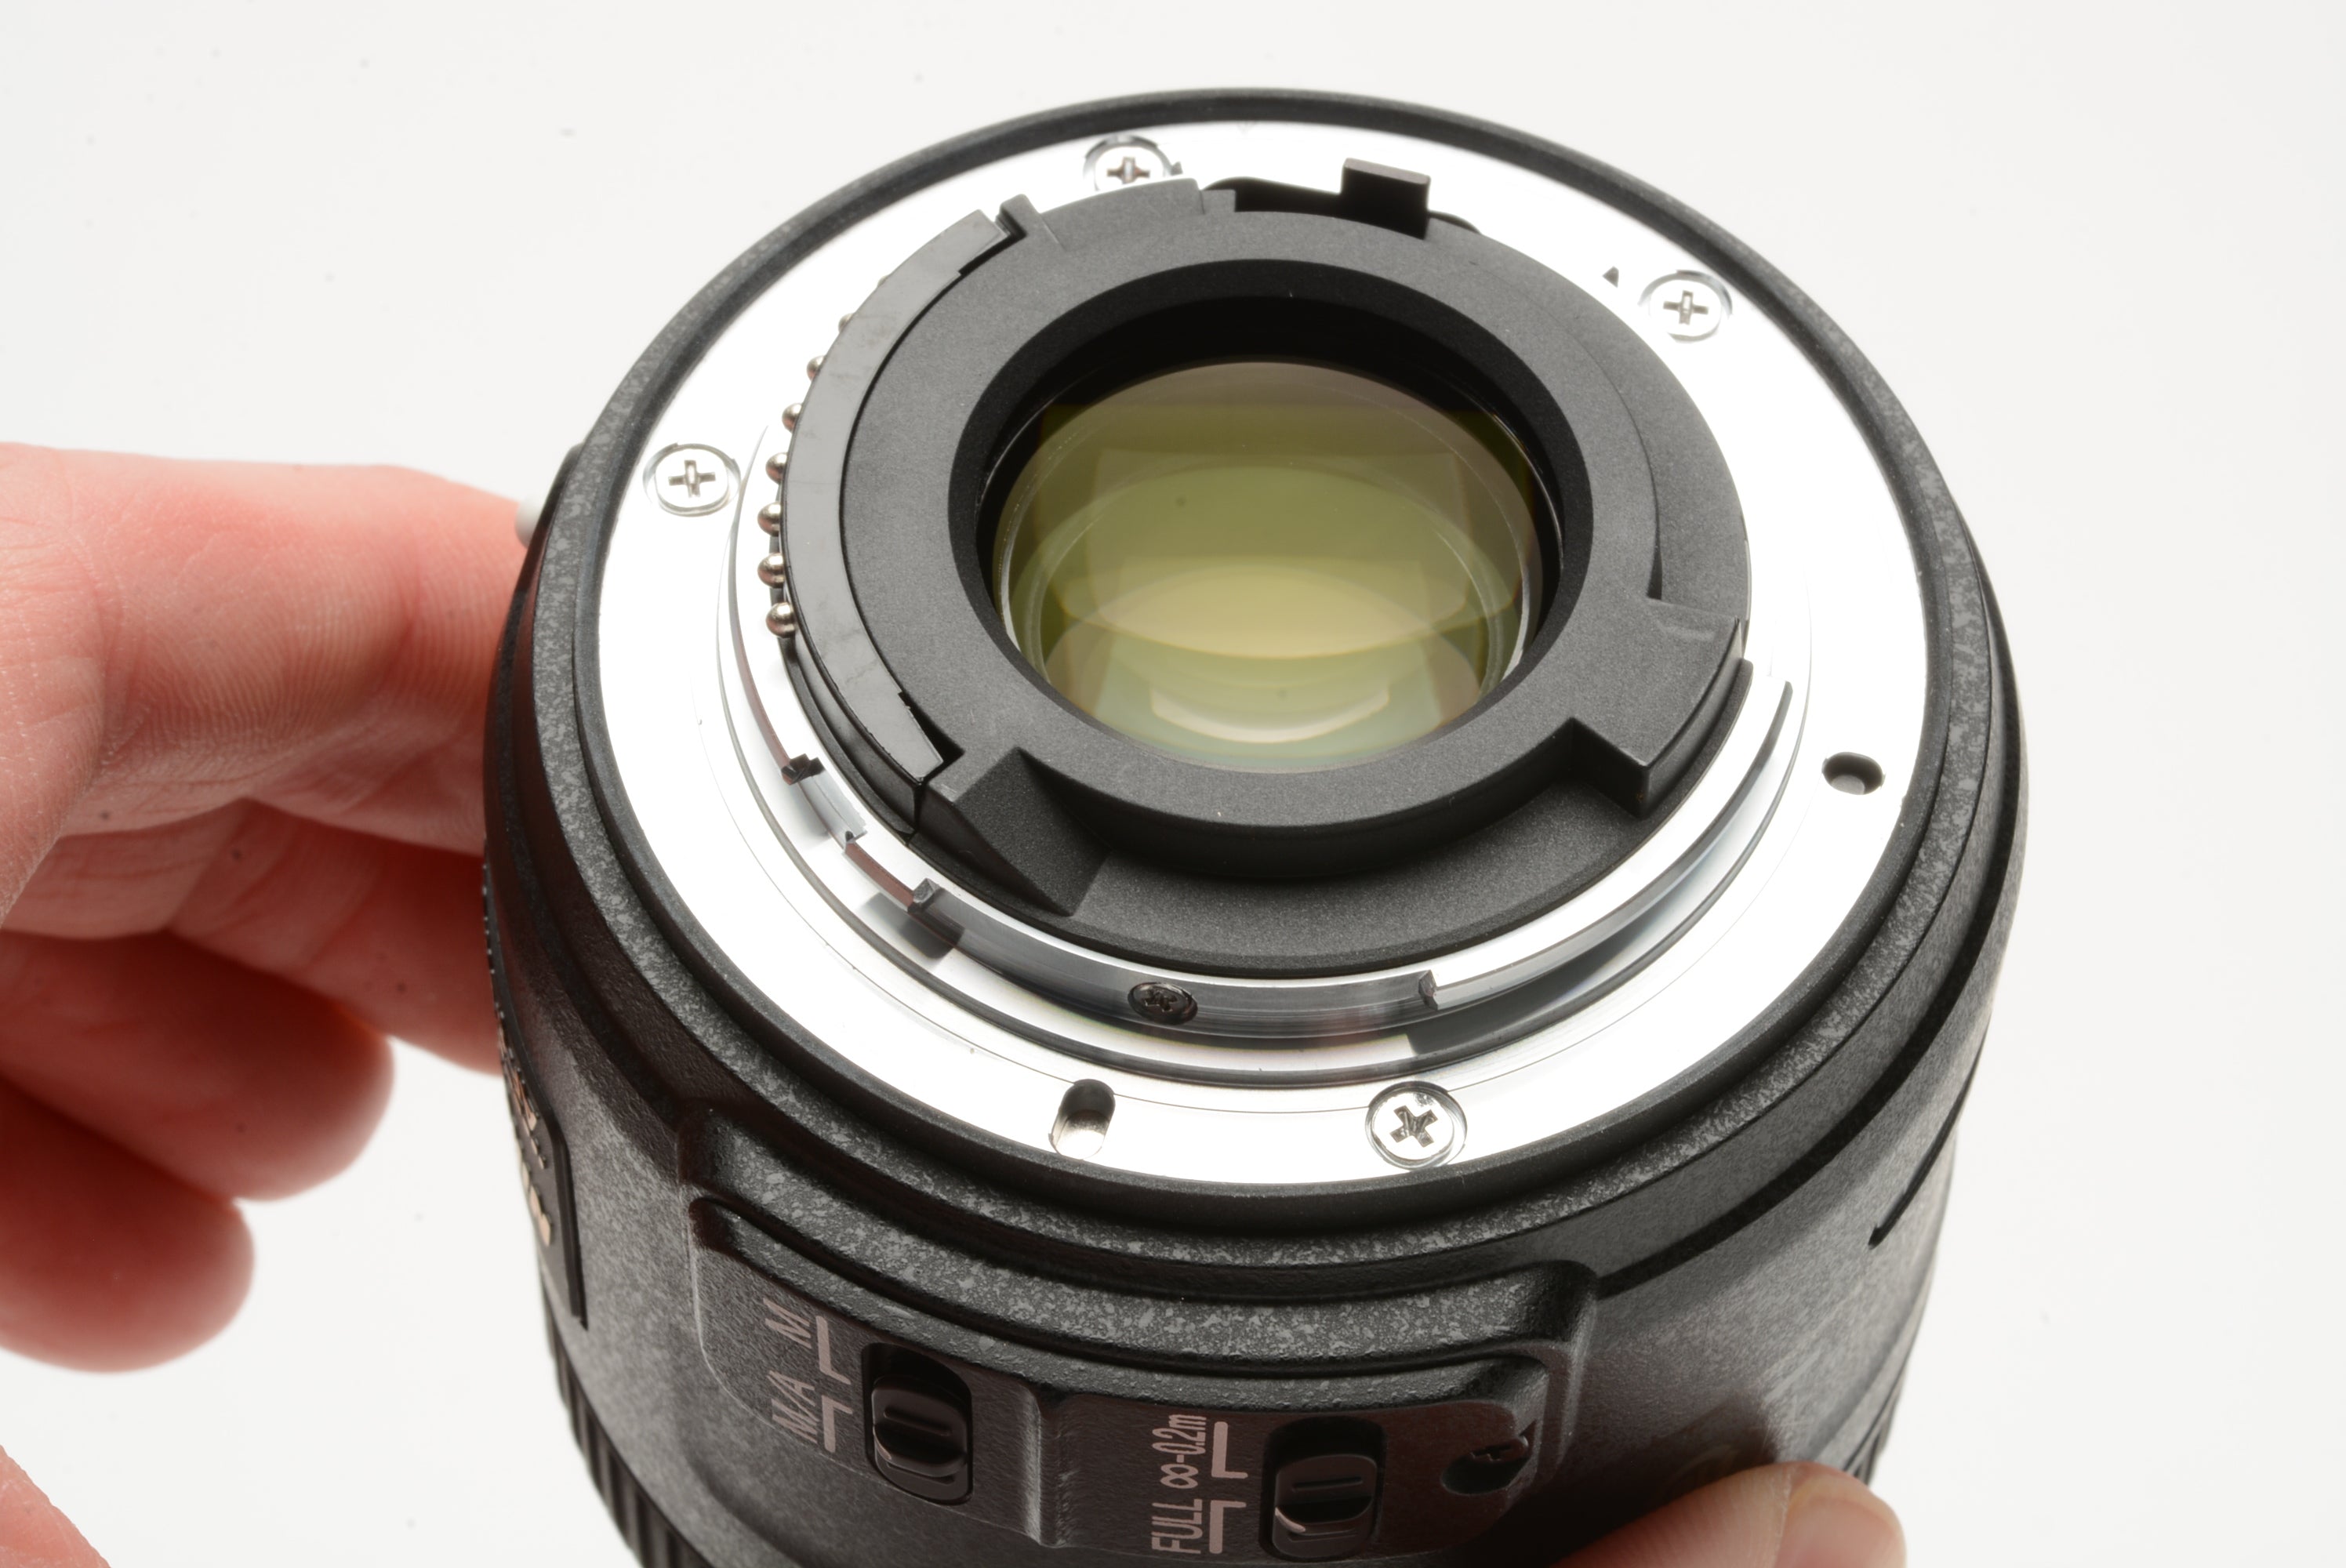 Nikon AF S Micro Nikkor mm f2.8G DX lens, hood+caps, very clean